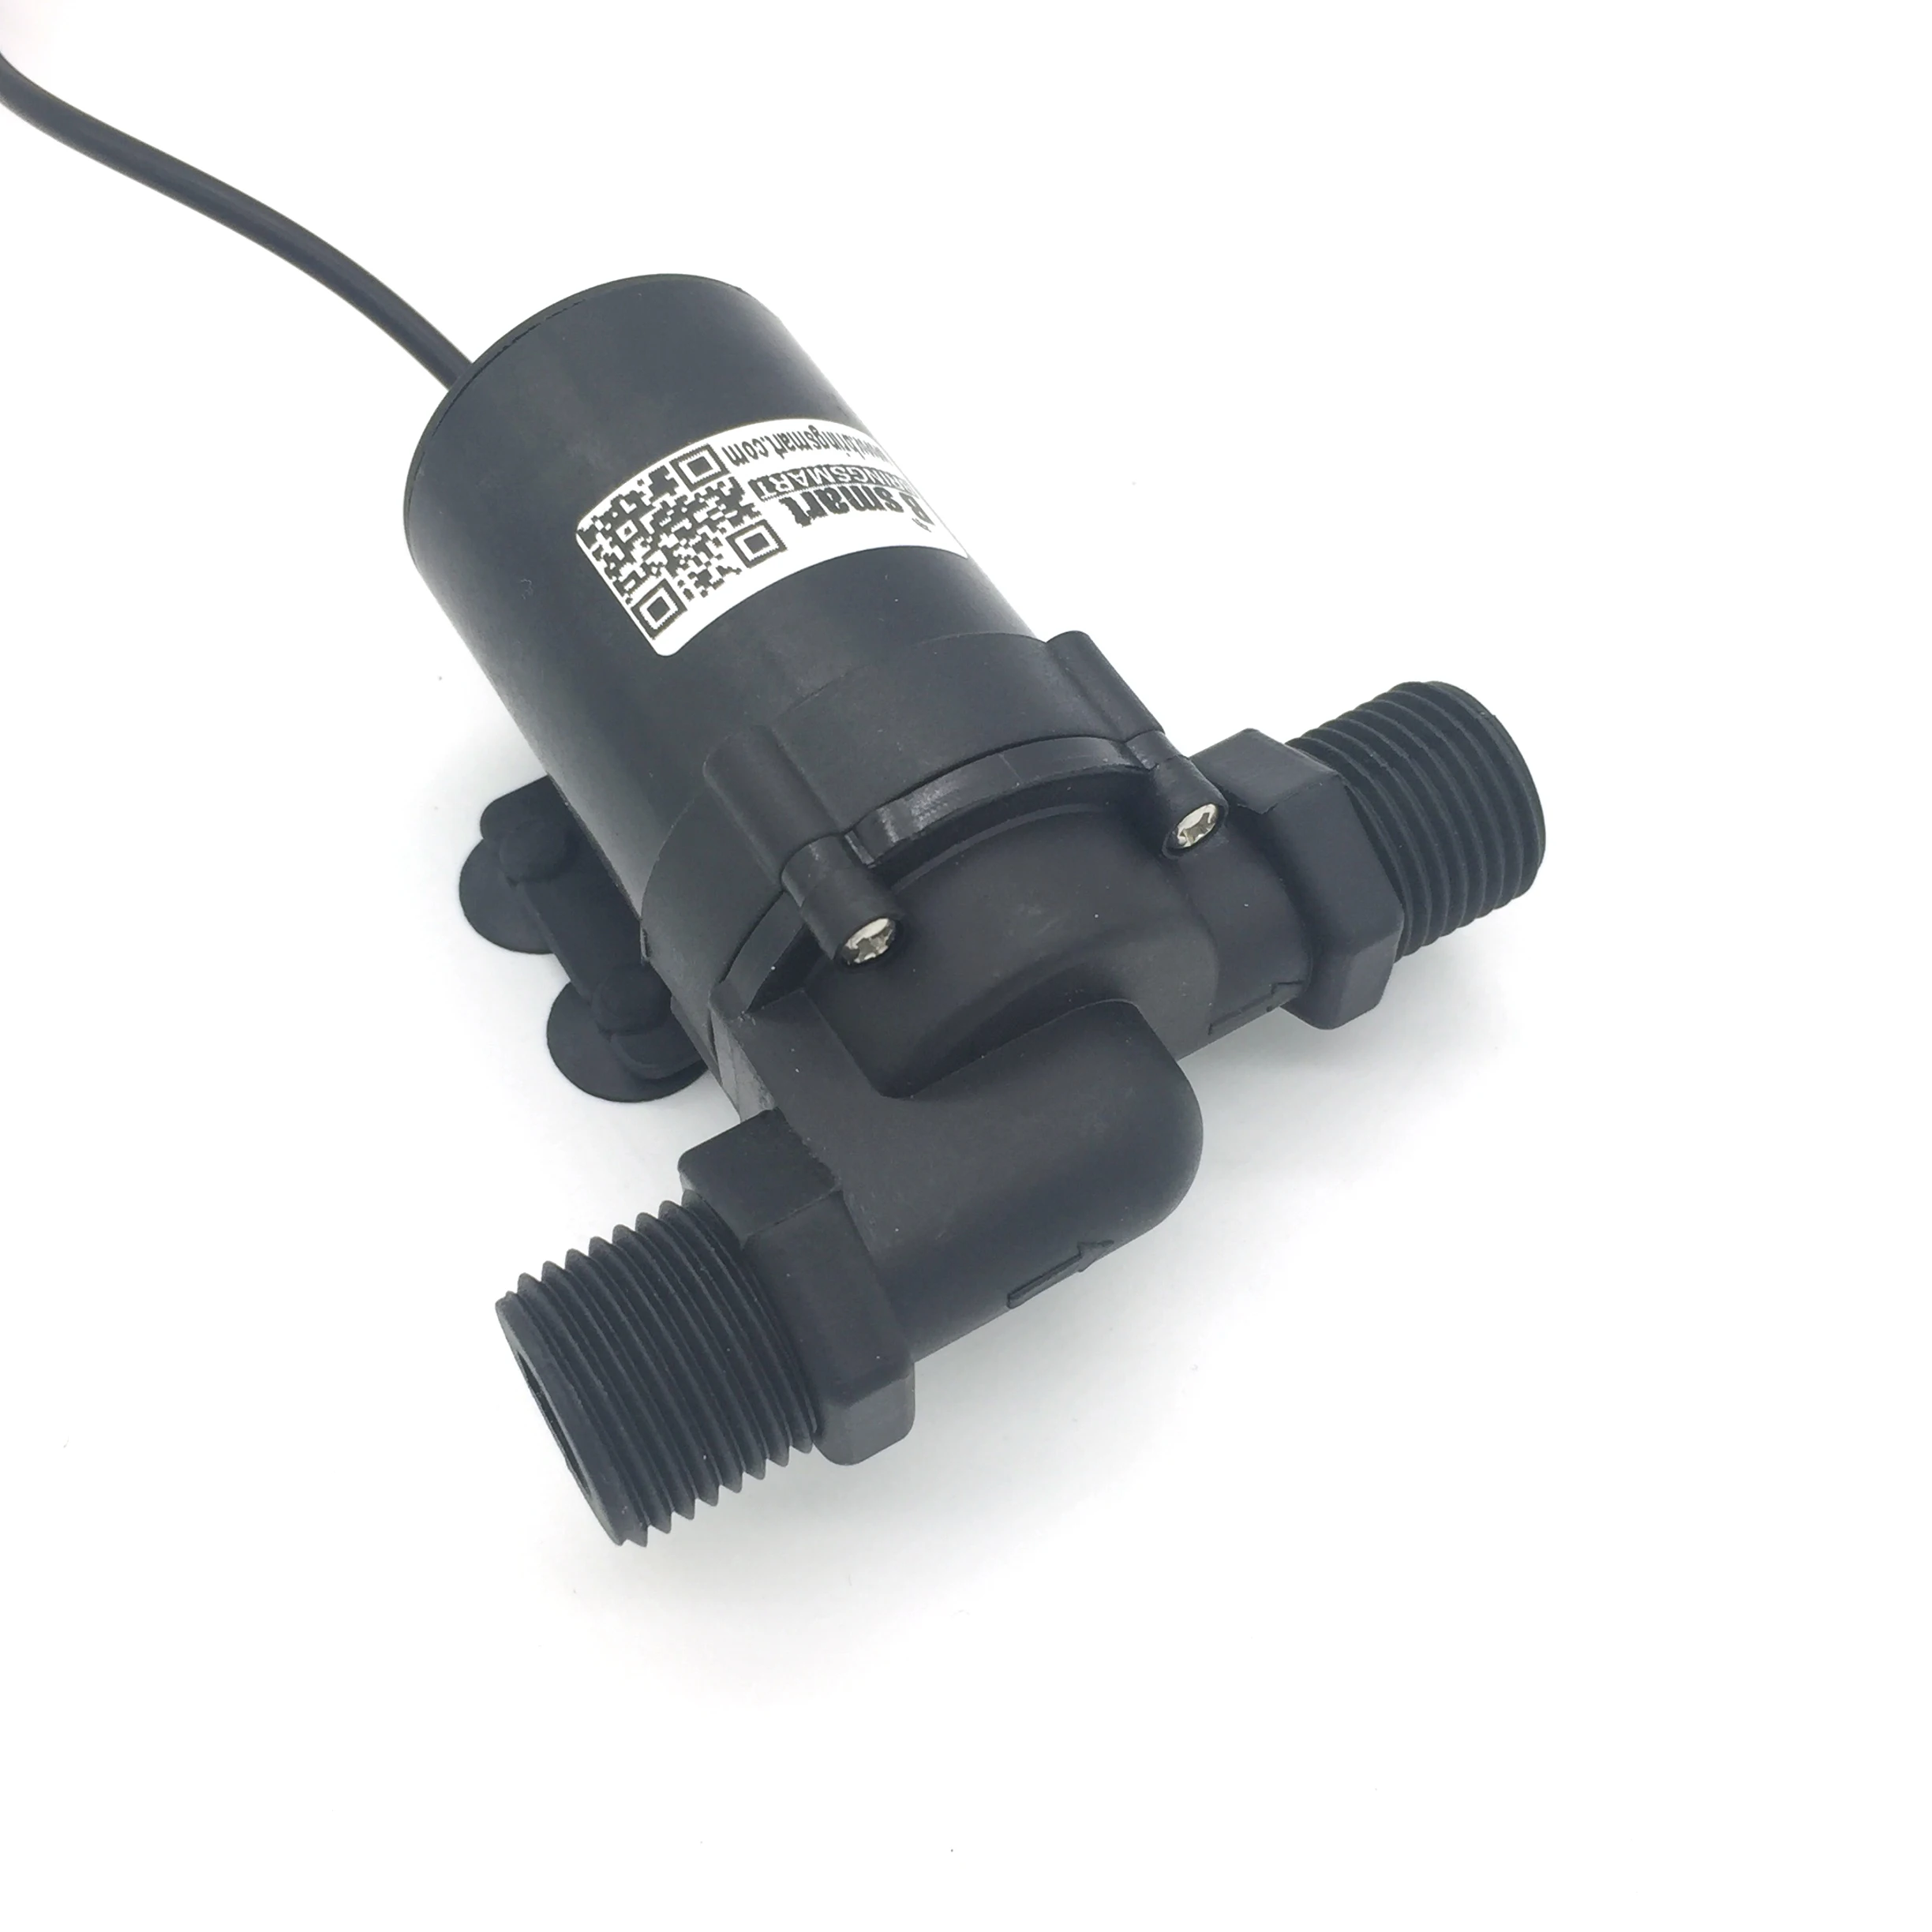 Насос для воды бесколлекторный SR660D 12 В, 12 В, USB, 24 В, для аквариума, фонтан, циркуляция 700-1200LH, самовсасывающий насос от AliExpress RU&CIS NEW